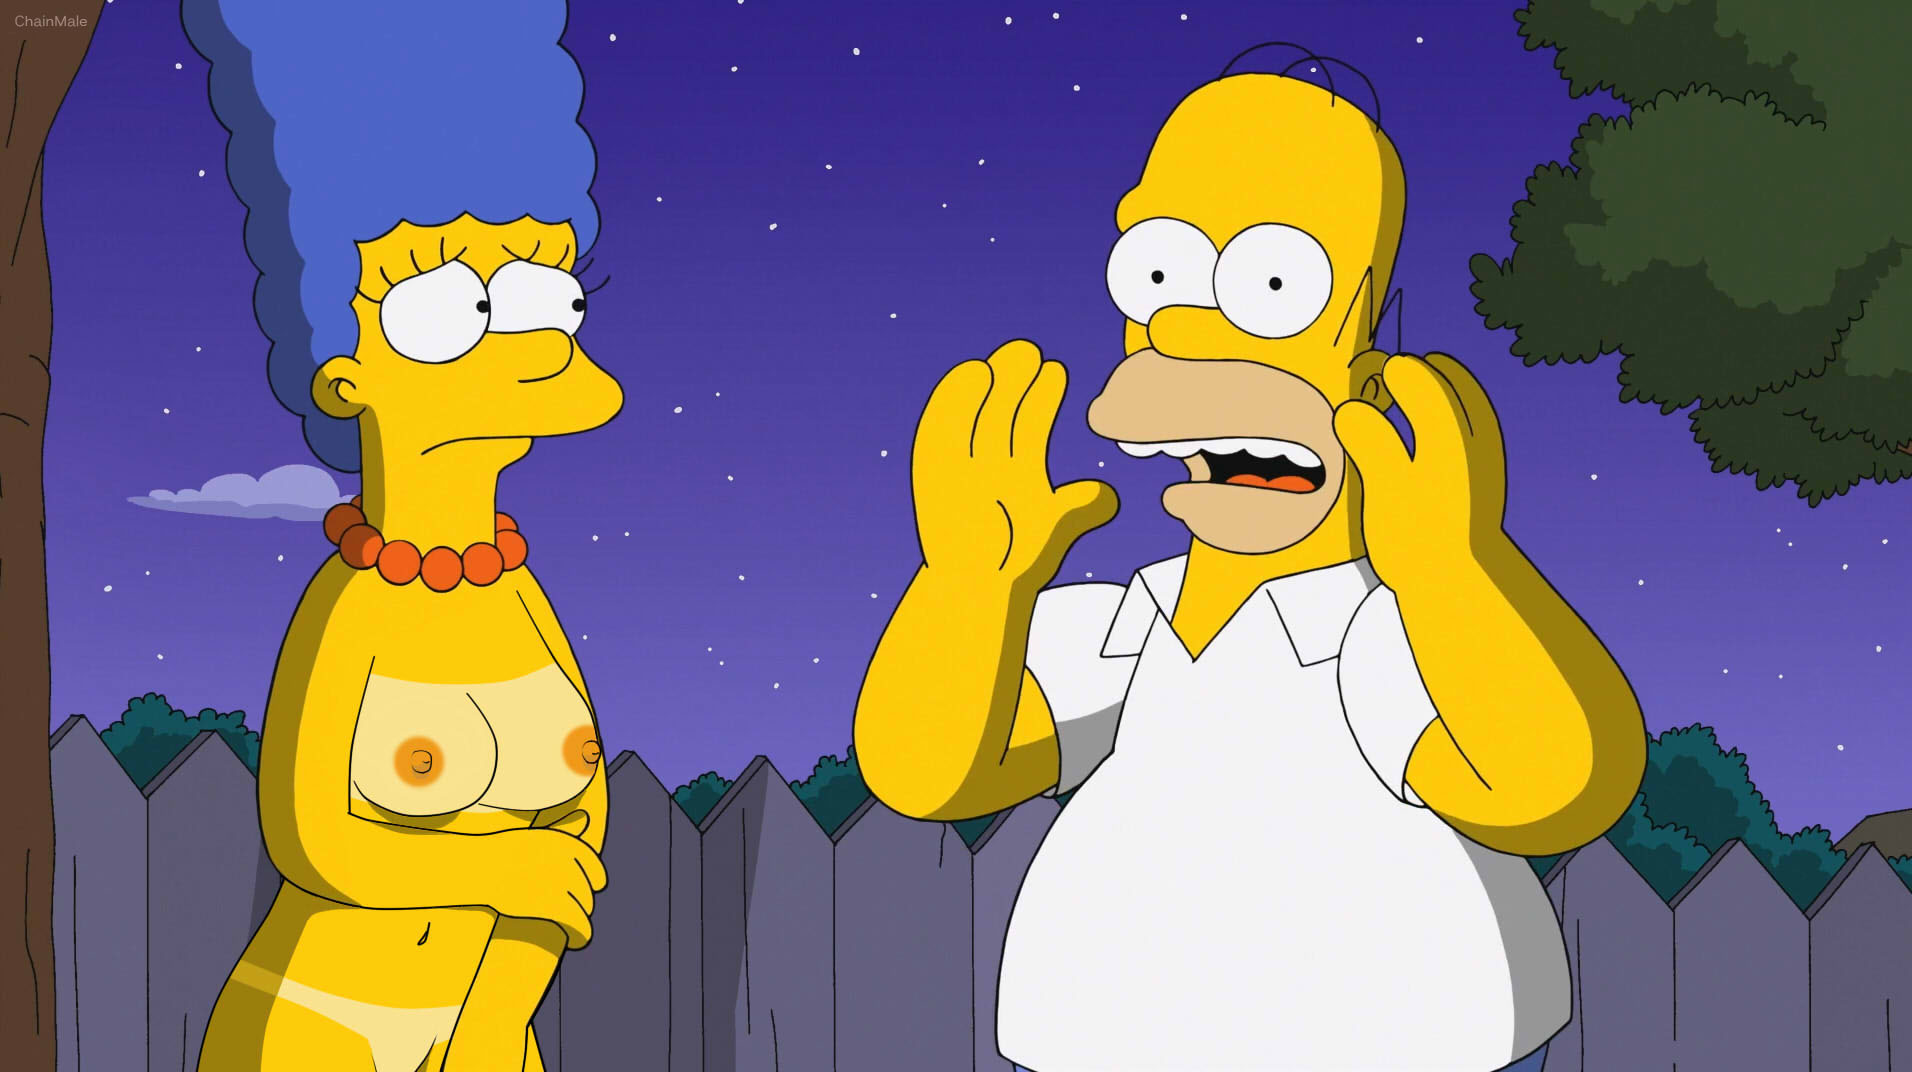 shauna hentai Simpsons